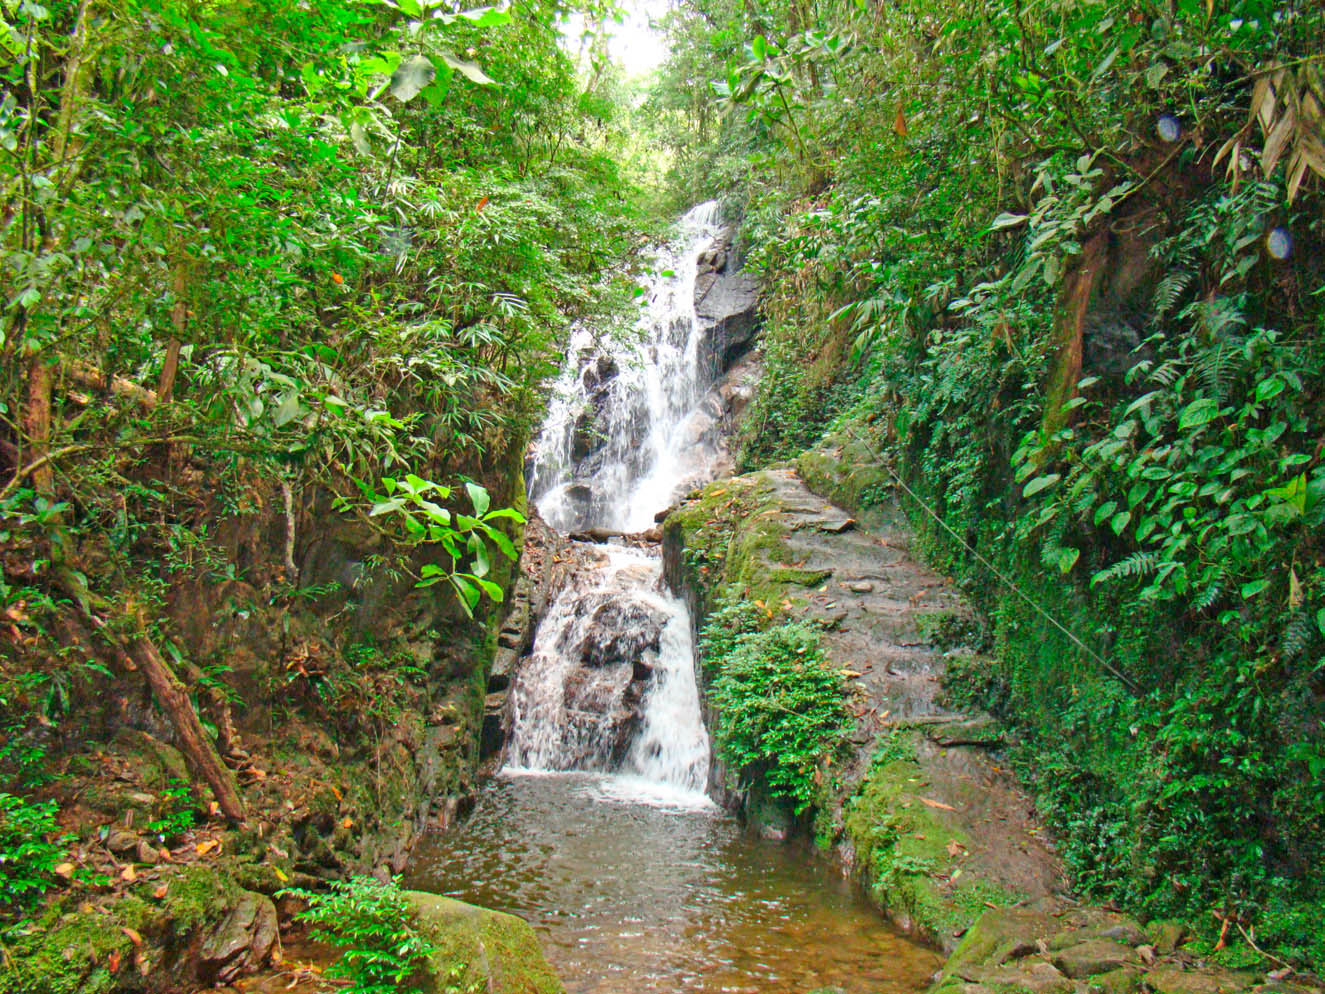 Turismo - Cachoeiras do Santuário - Pousada Verde Novo - Visconde de Mauá - RJ